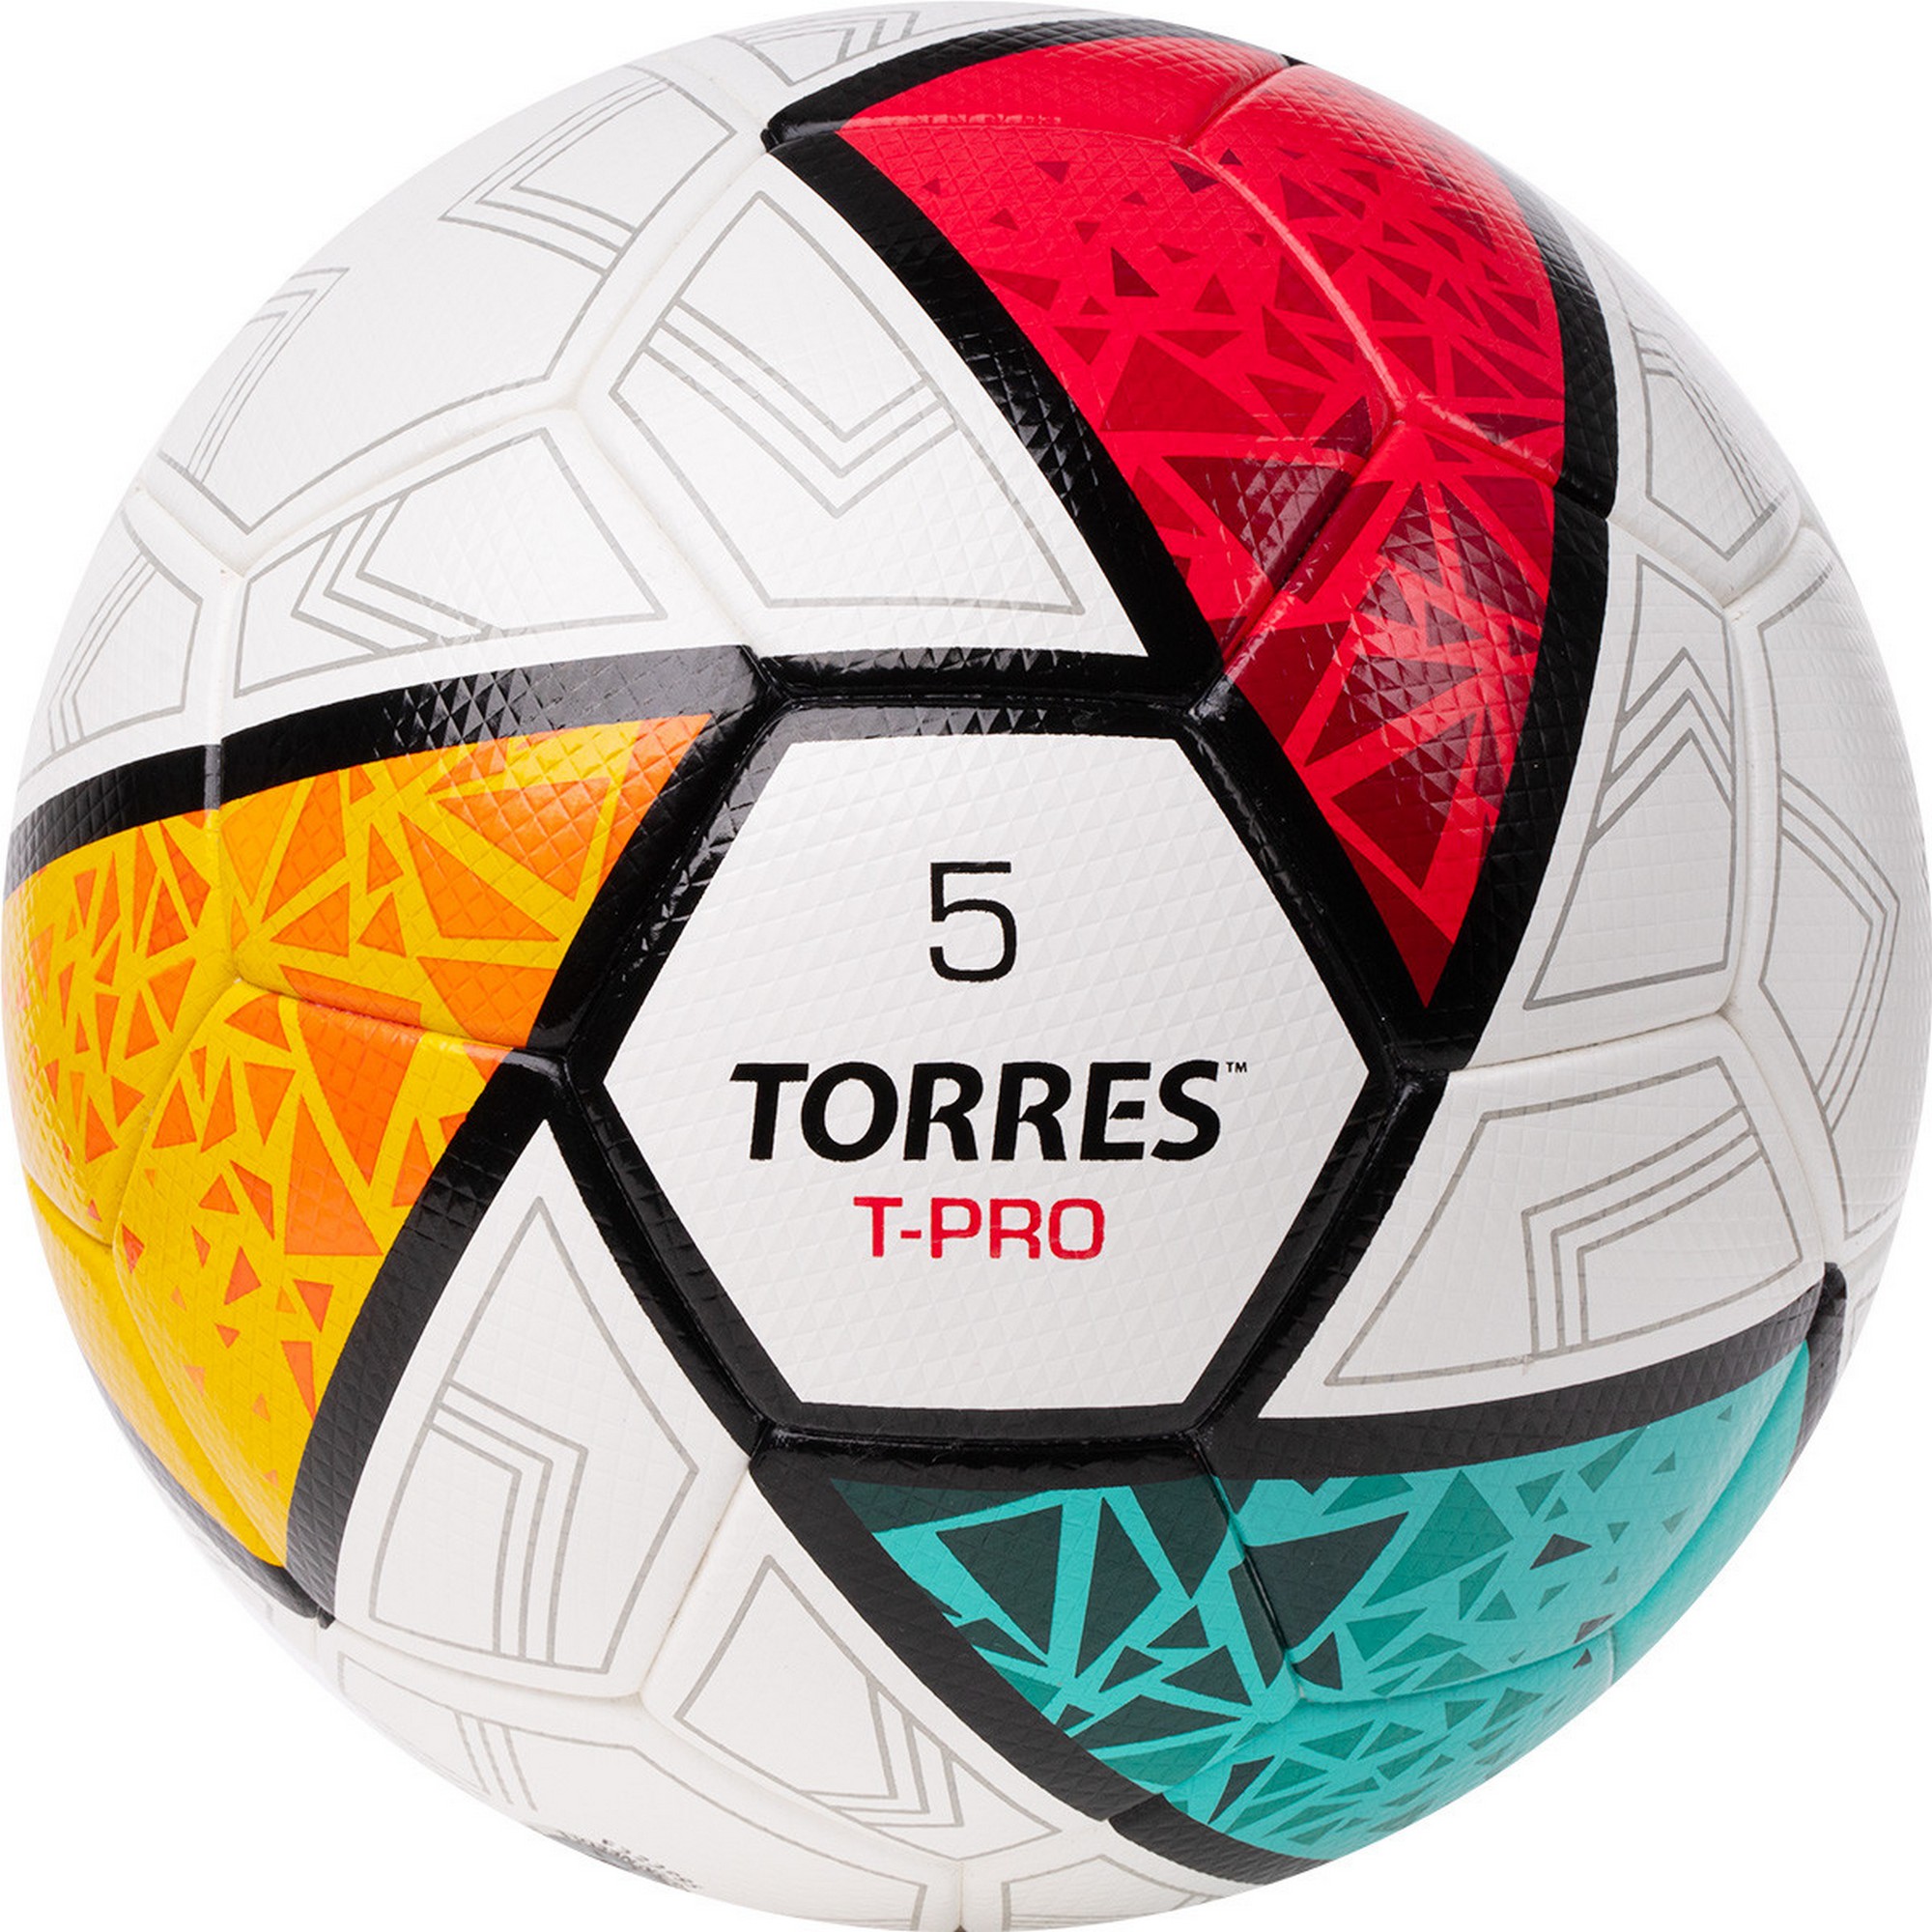   Torres T-Pro F323995 .5